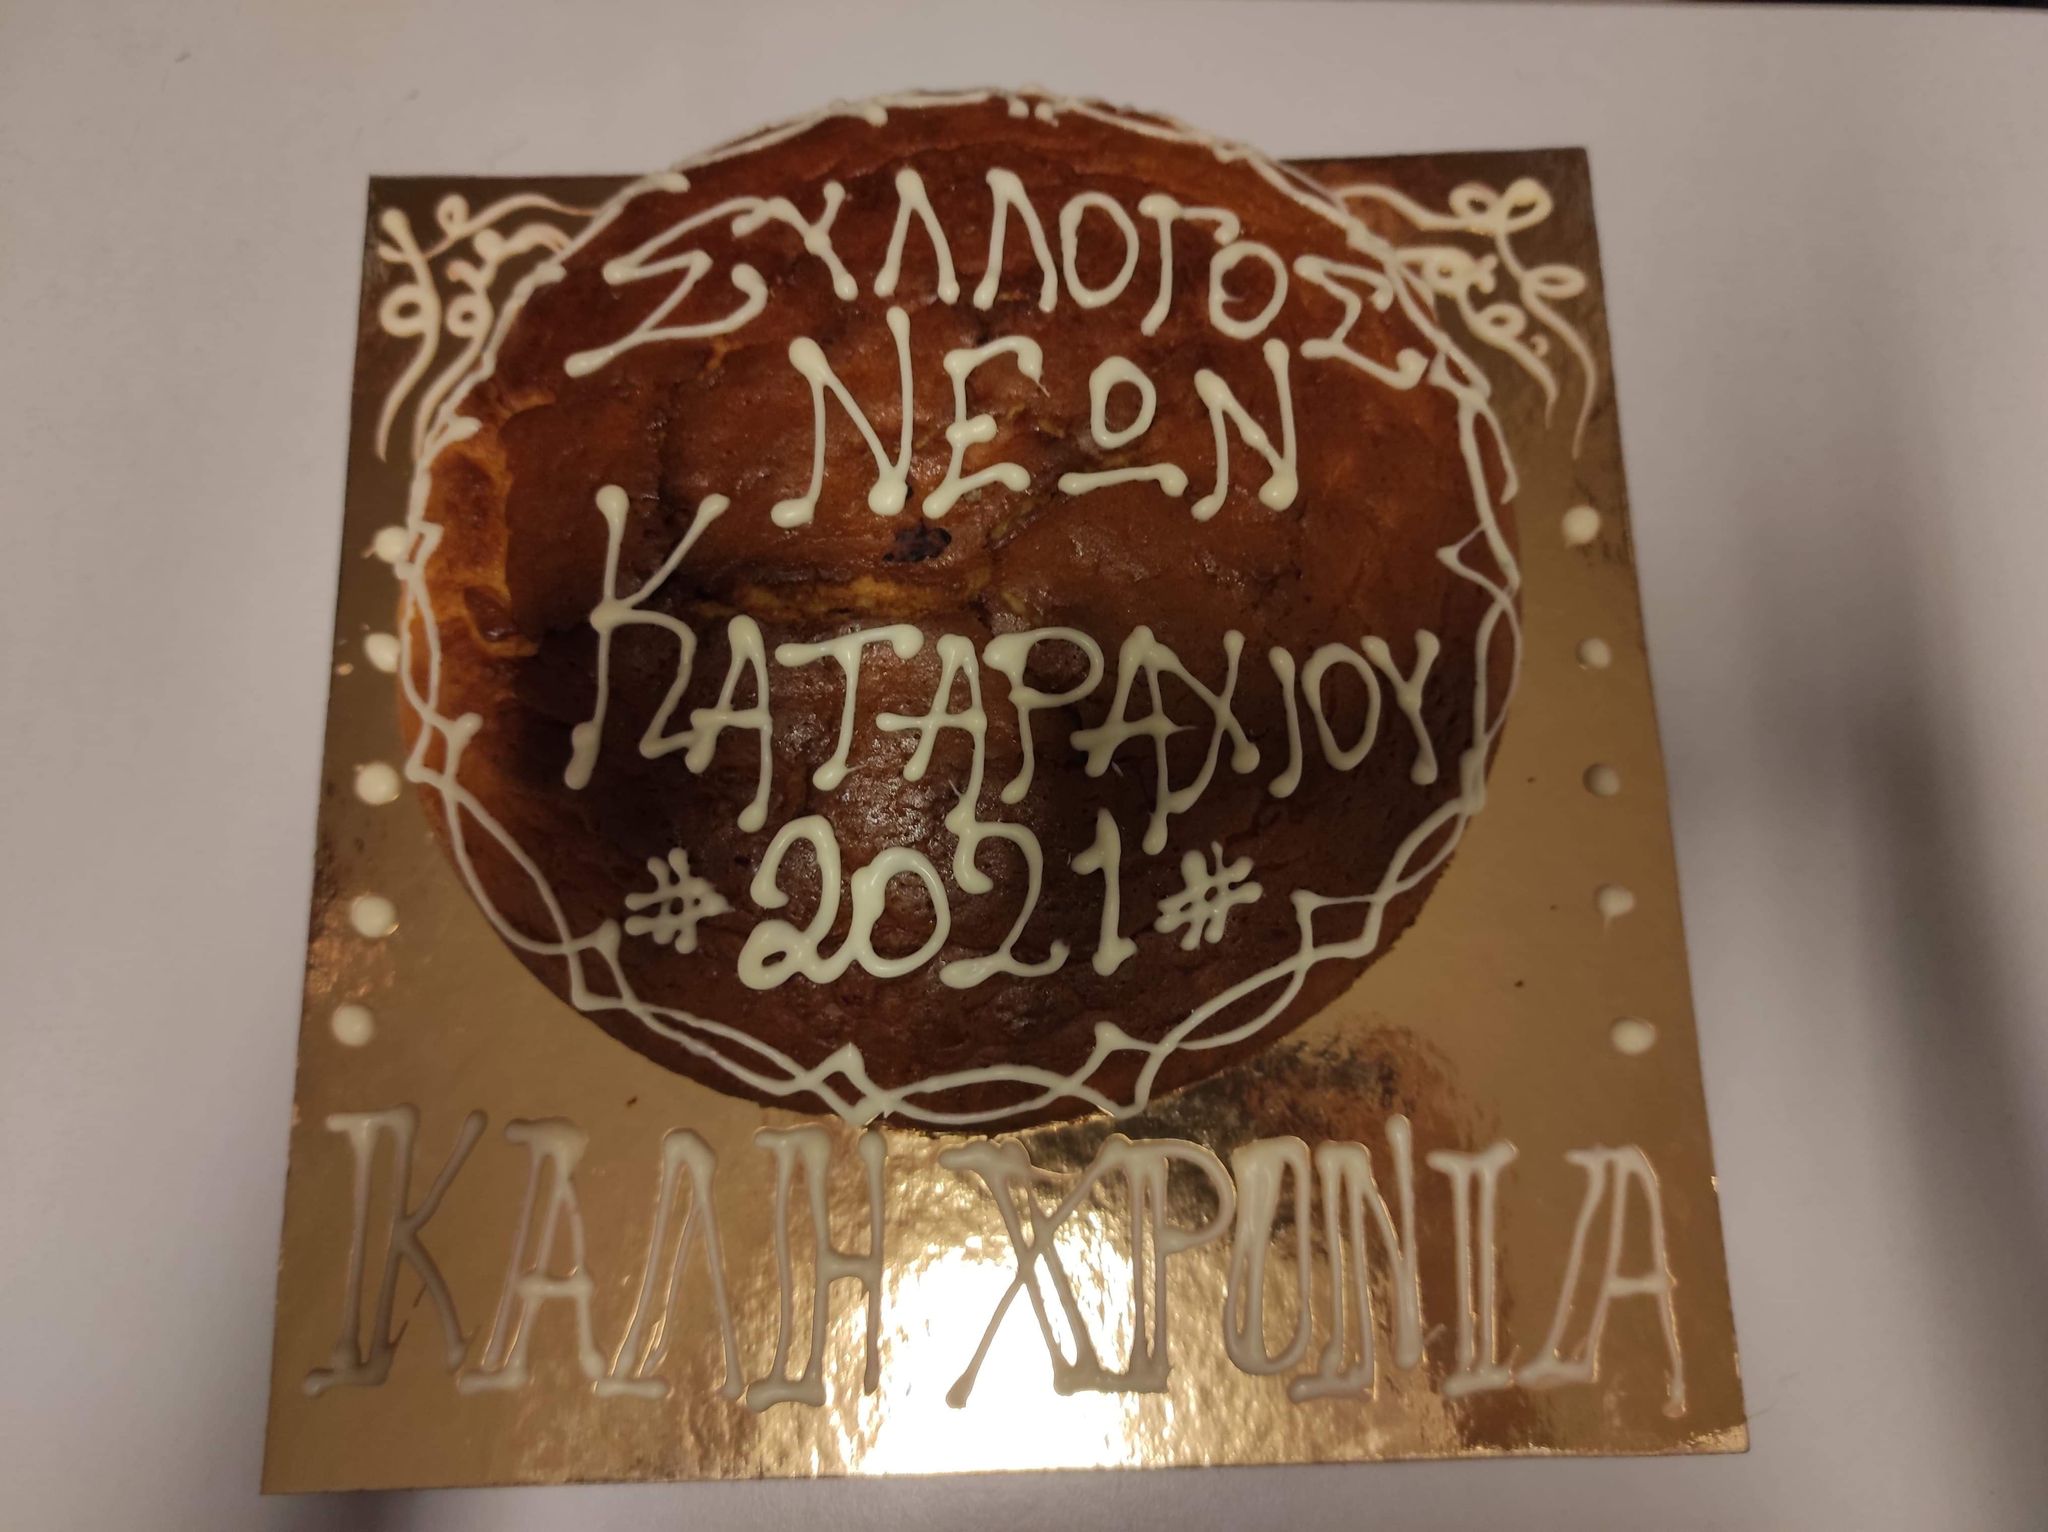 Πύργος- Σύλλογος Νέων Καταραχίου: Έκοψε την Πρωτοχρονιάτικη βασιλόπιτα, σε μία κλειστή εκδήλωση, λόγω covid, το ΔΣ του Συλλόγου